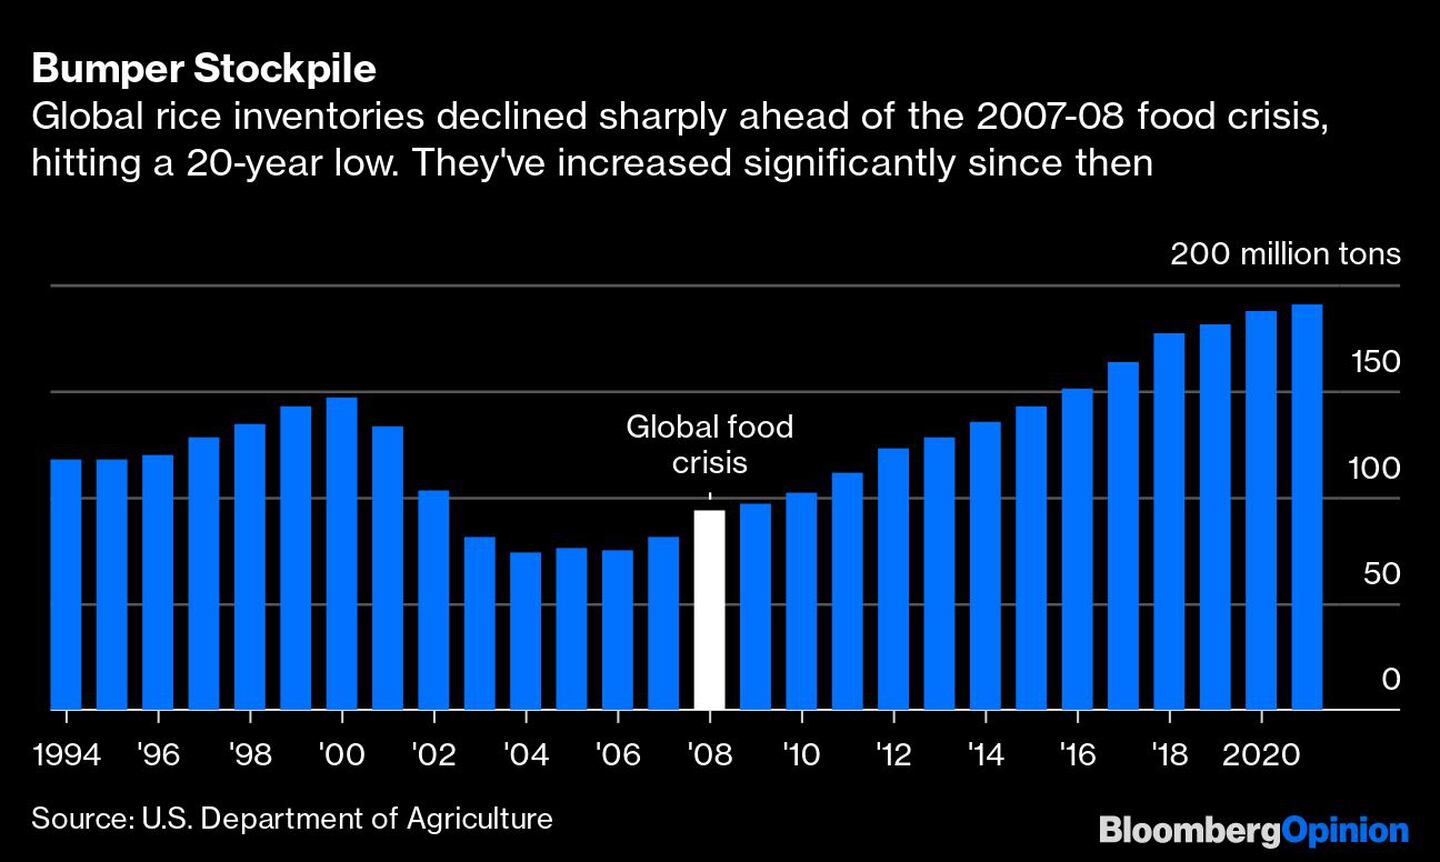 Los inventarios de arroz cayeron drásticamente previo a la crisis alimentaria de 2007-2008, pero se han incrementado de manera significativa desde entoncesdfd